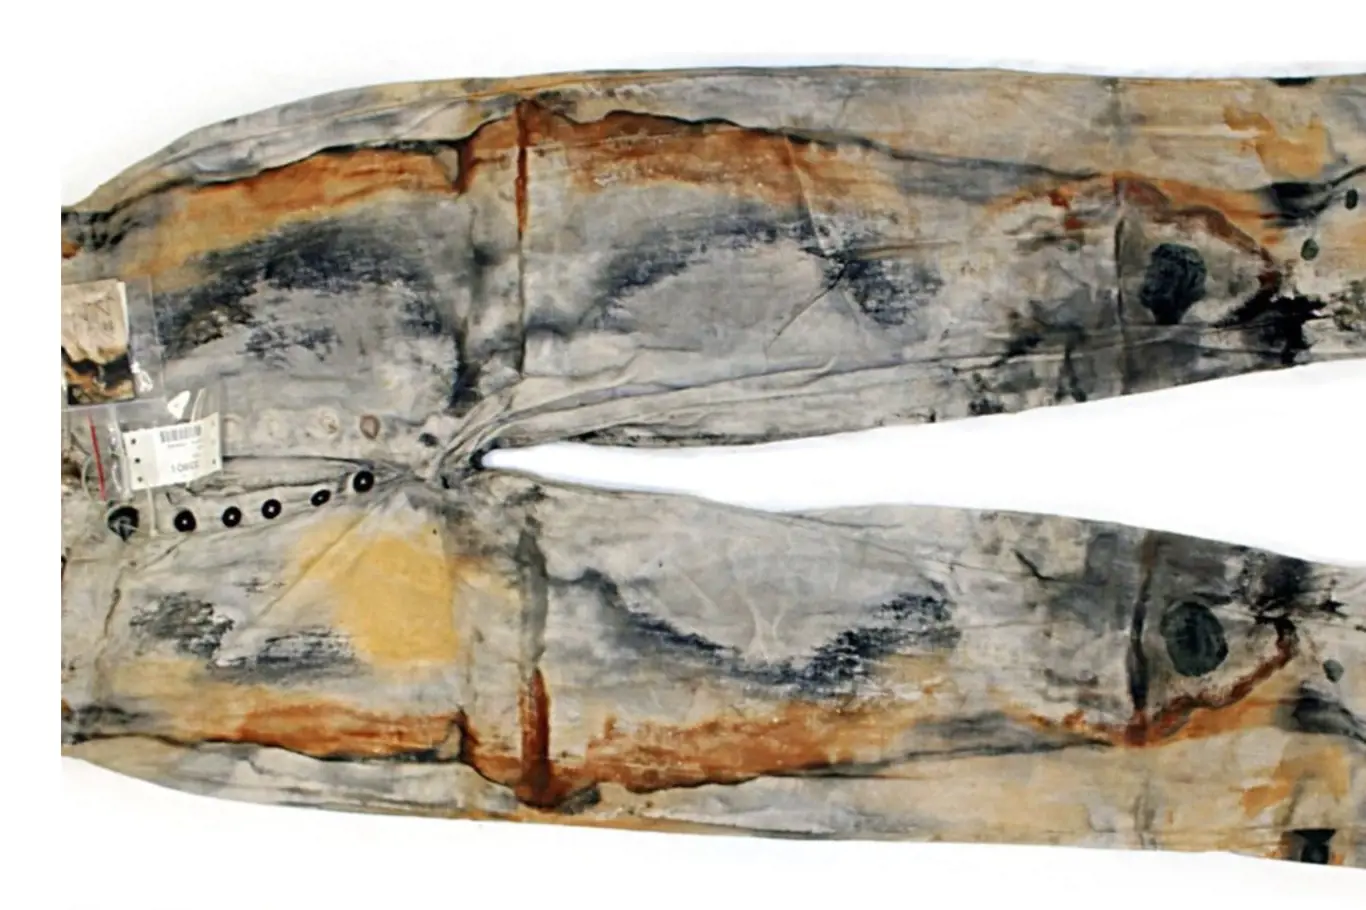 Pracovní kalhoty s pěti knoflíky nalezené na lodi S.S. Central America